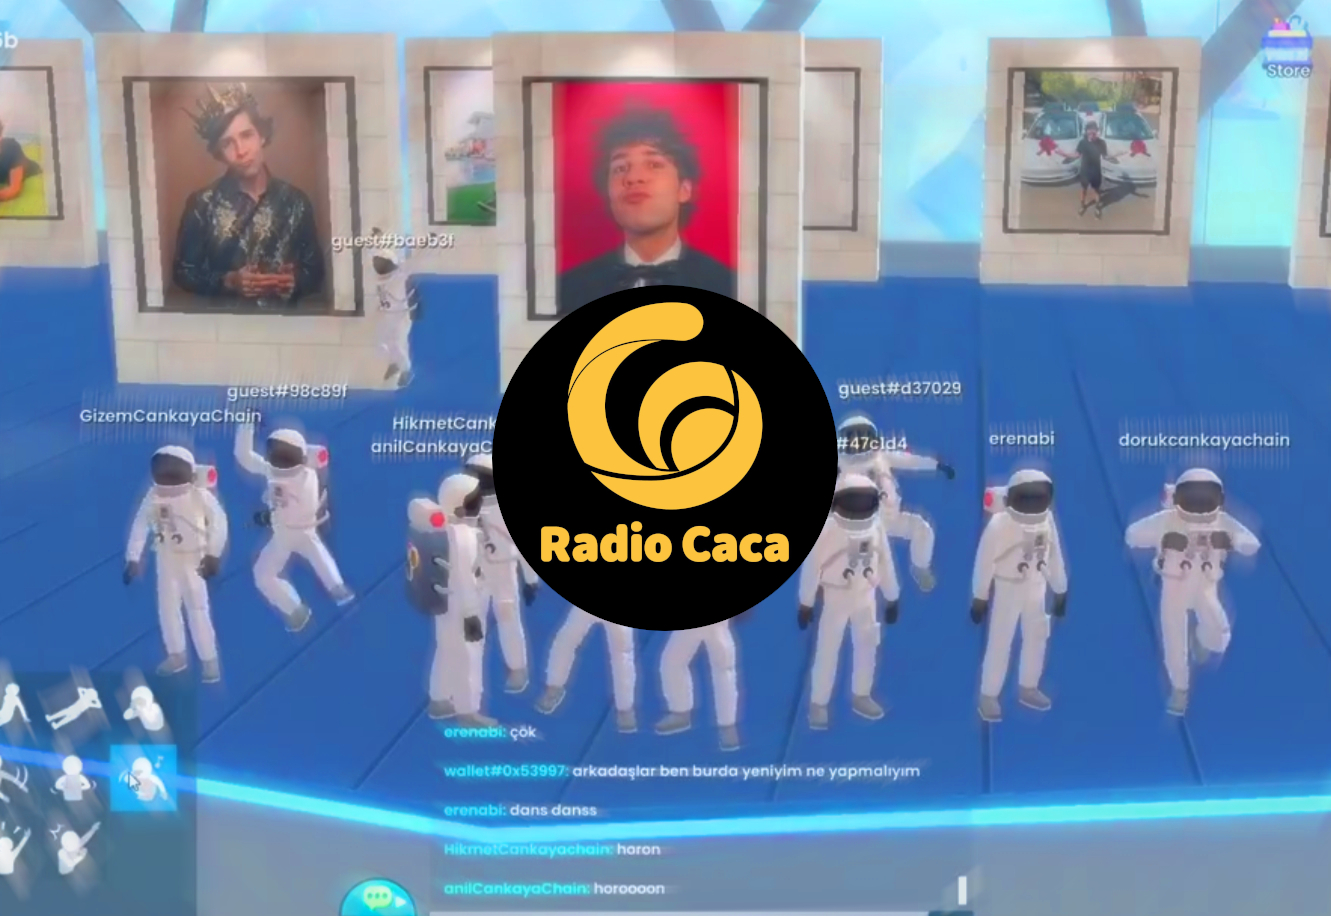 radio caca raca university of turkey metaverse